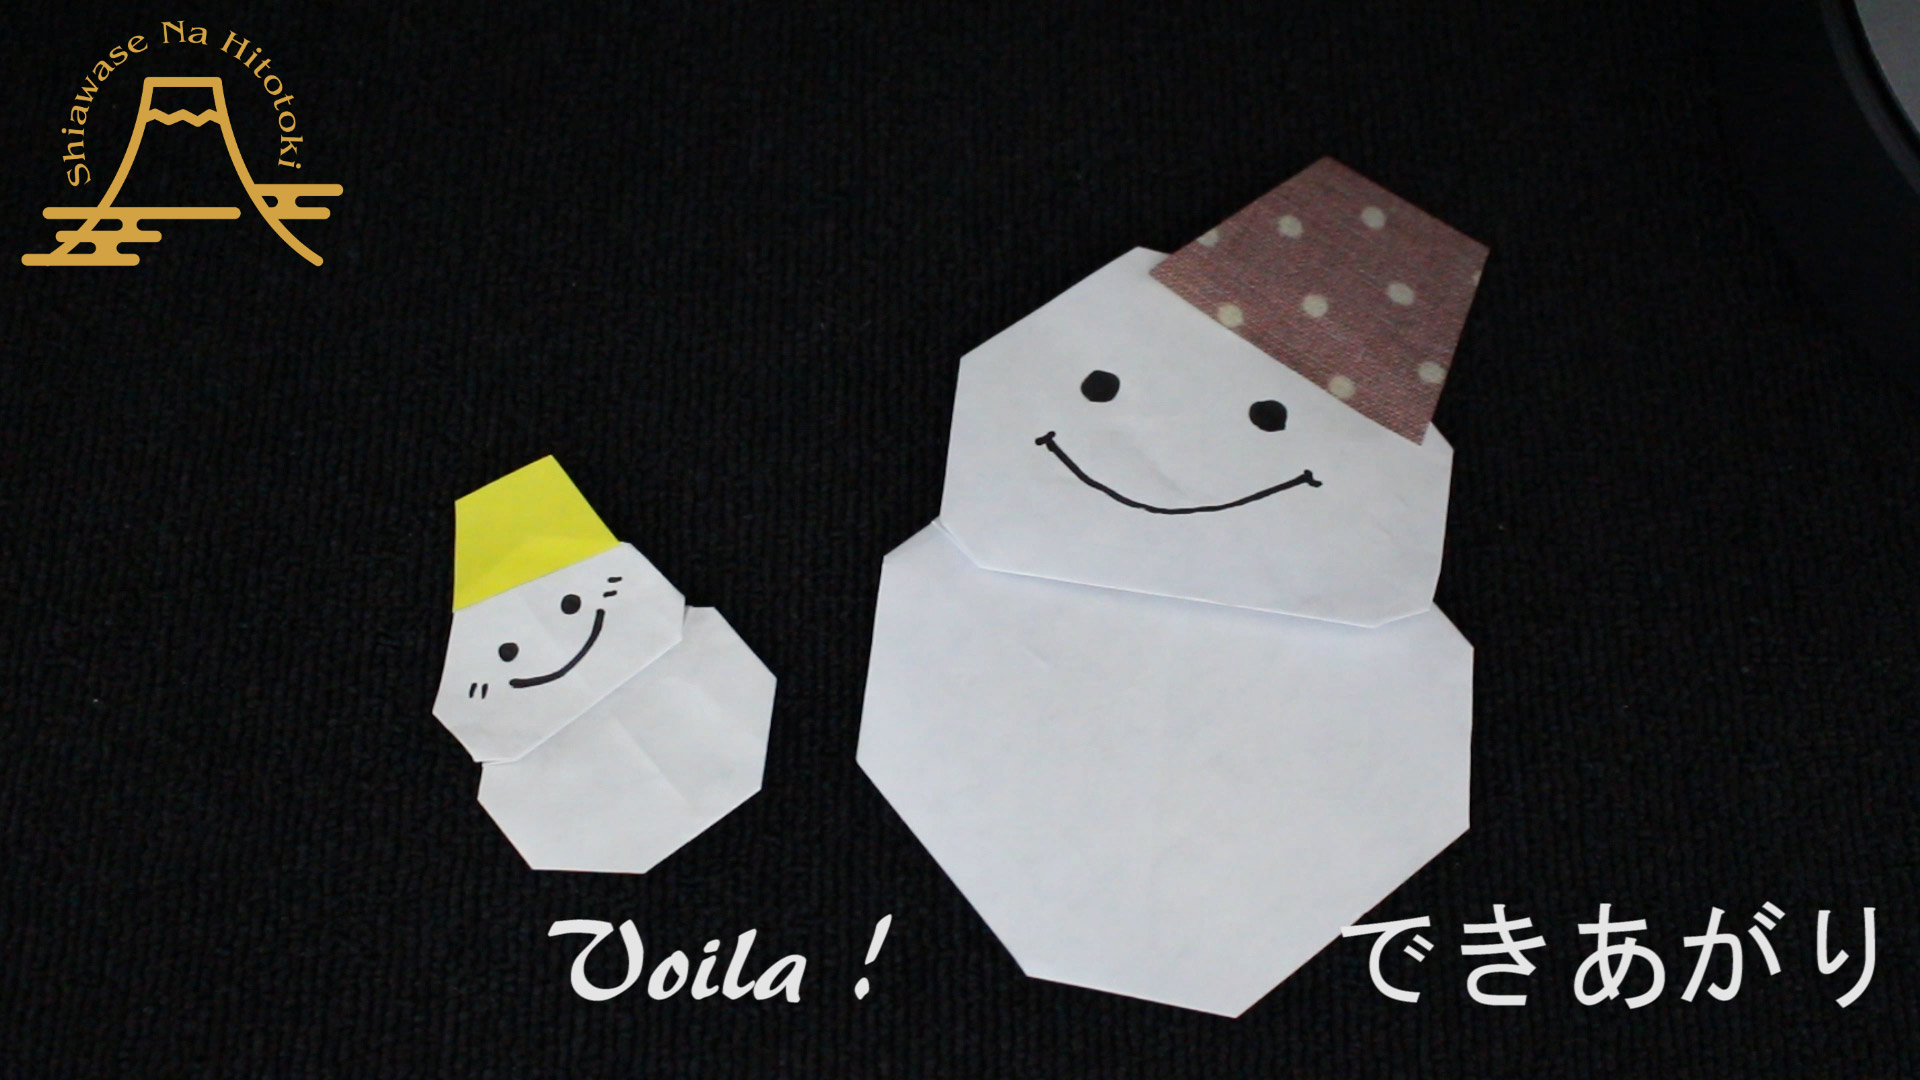 簡単 折り紙 ダイアモンドの折り方 折り紙の折り方 幸せなひと時